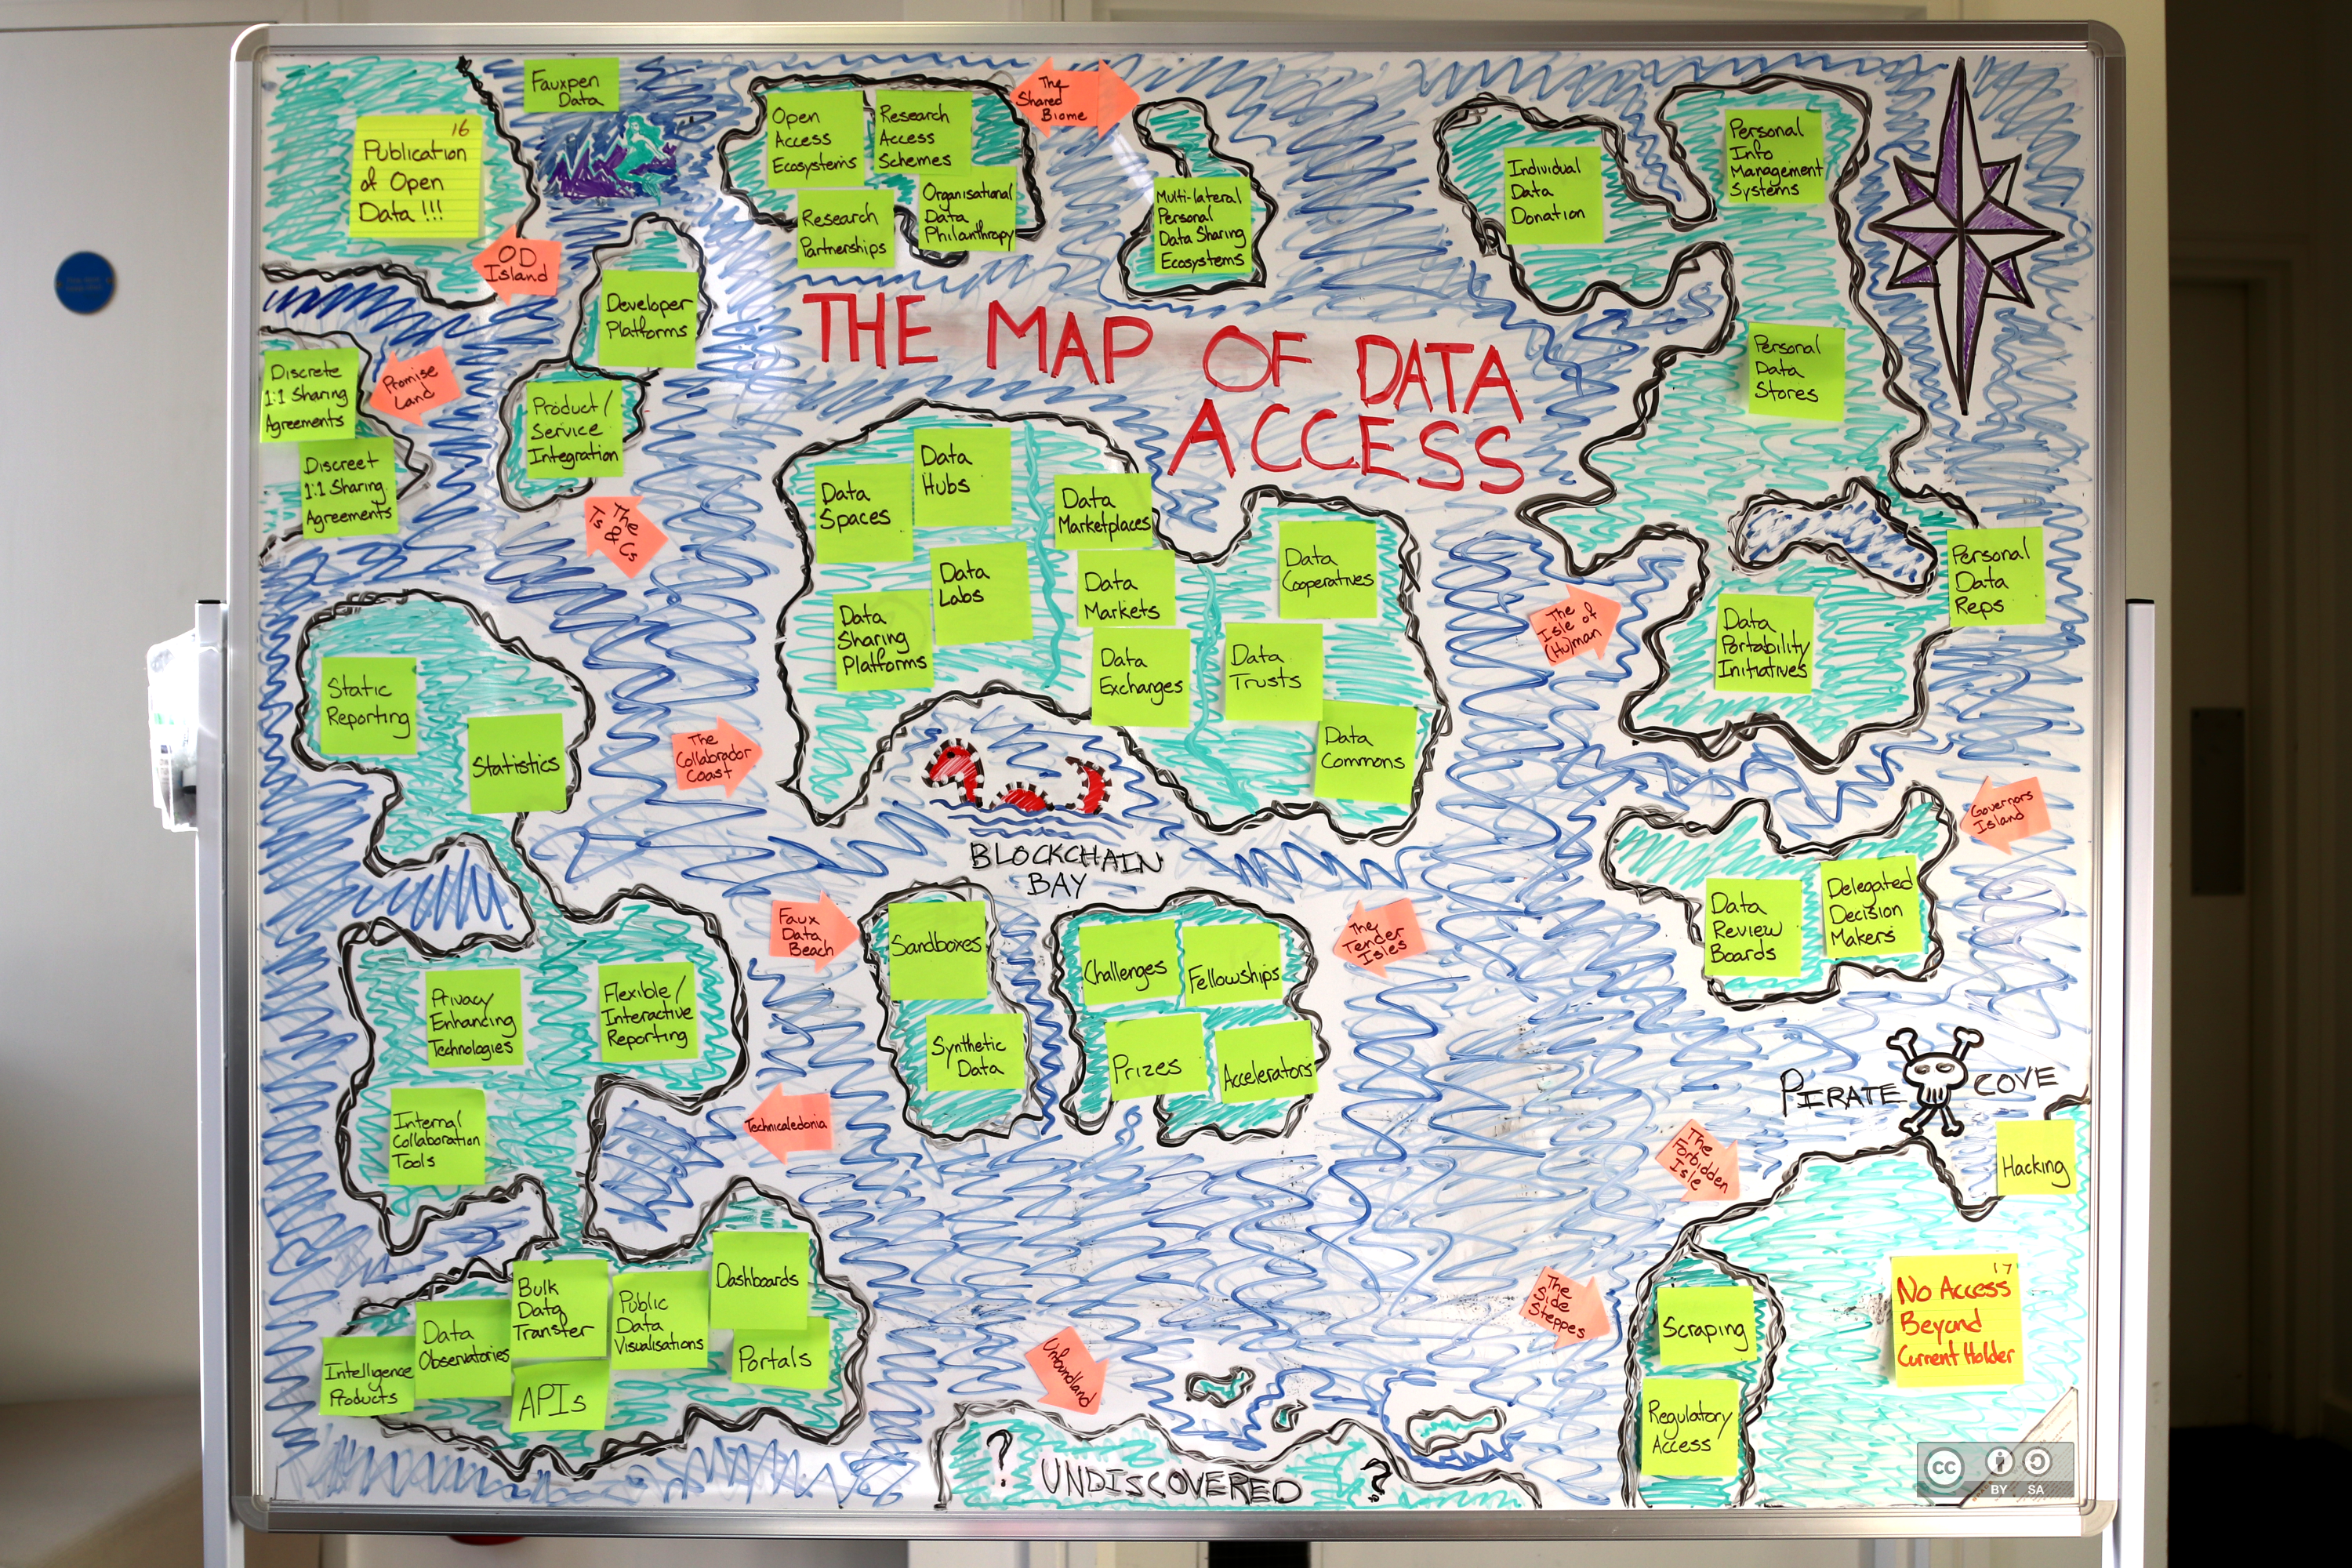 ODI Data Access Map - whiteboard version